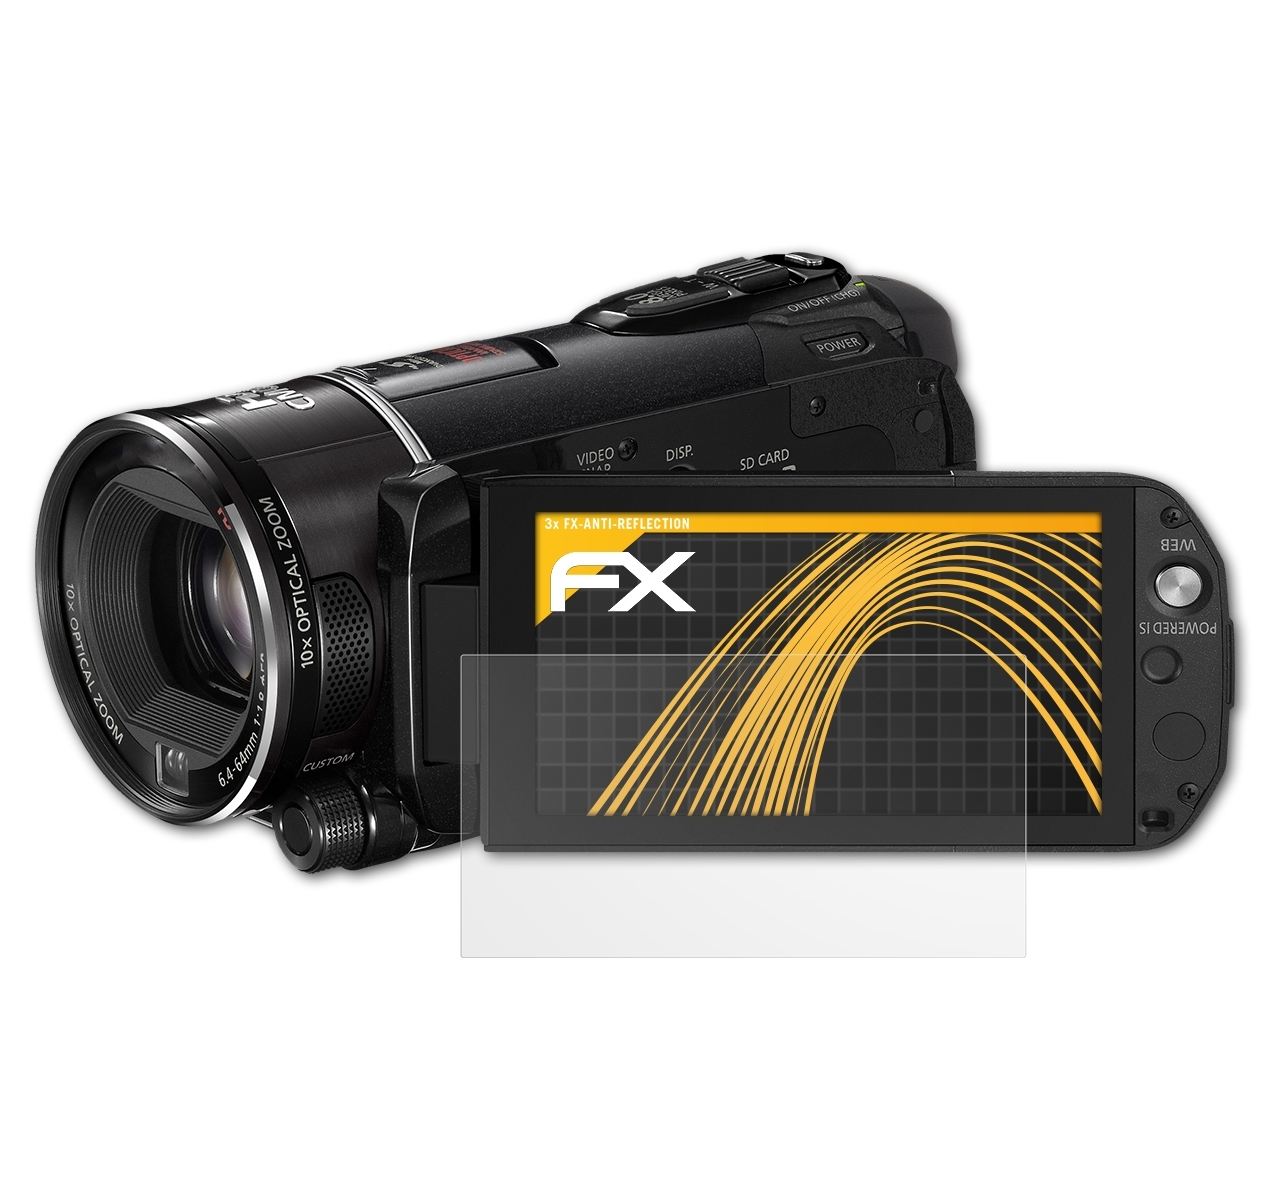 ATFOLIX 3x FX-Antireflex Displayschutz(für Canon S21) HF (Vixia) Legria